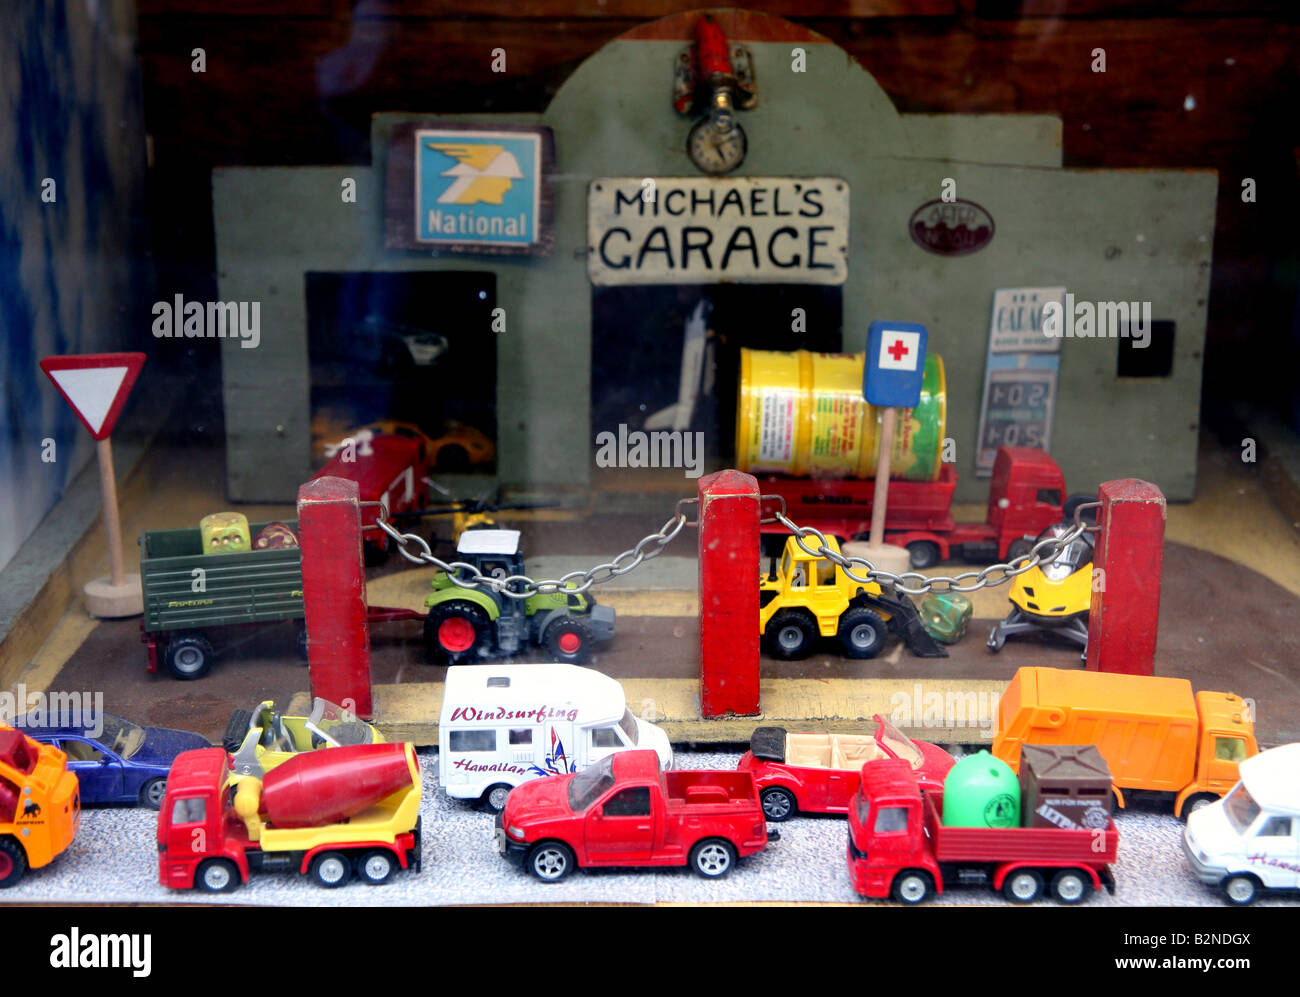 Garage giocattolo e veicoli visualizzati nella finestra del negozio Foto Stock